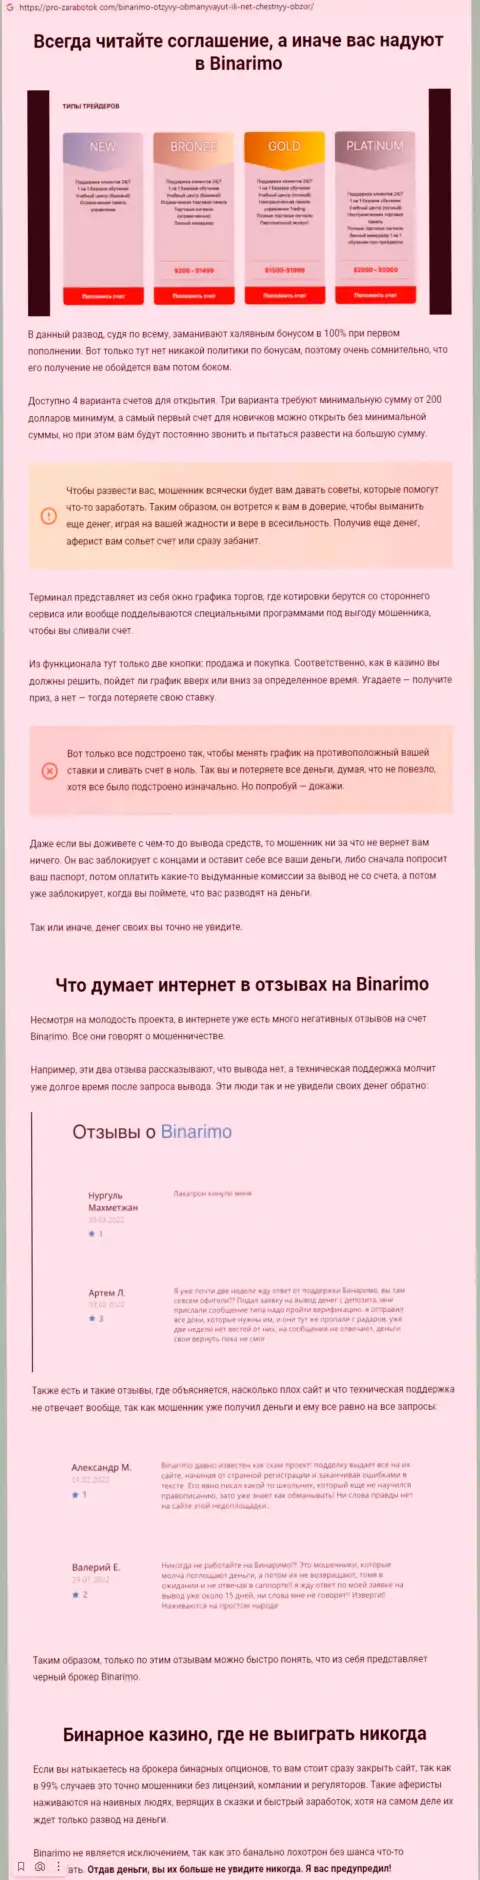 Бинаримо Ком - это интернет кидалы, которым средства доверять нельзя ни при каких обстоятельствах (обзор неправомерных действий)